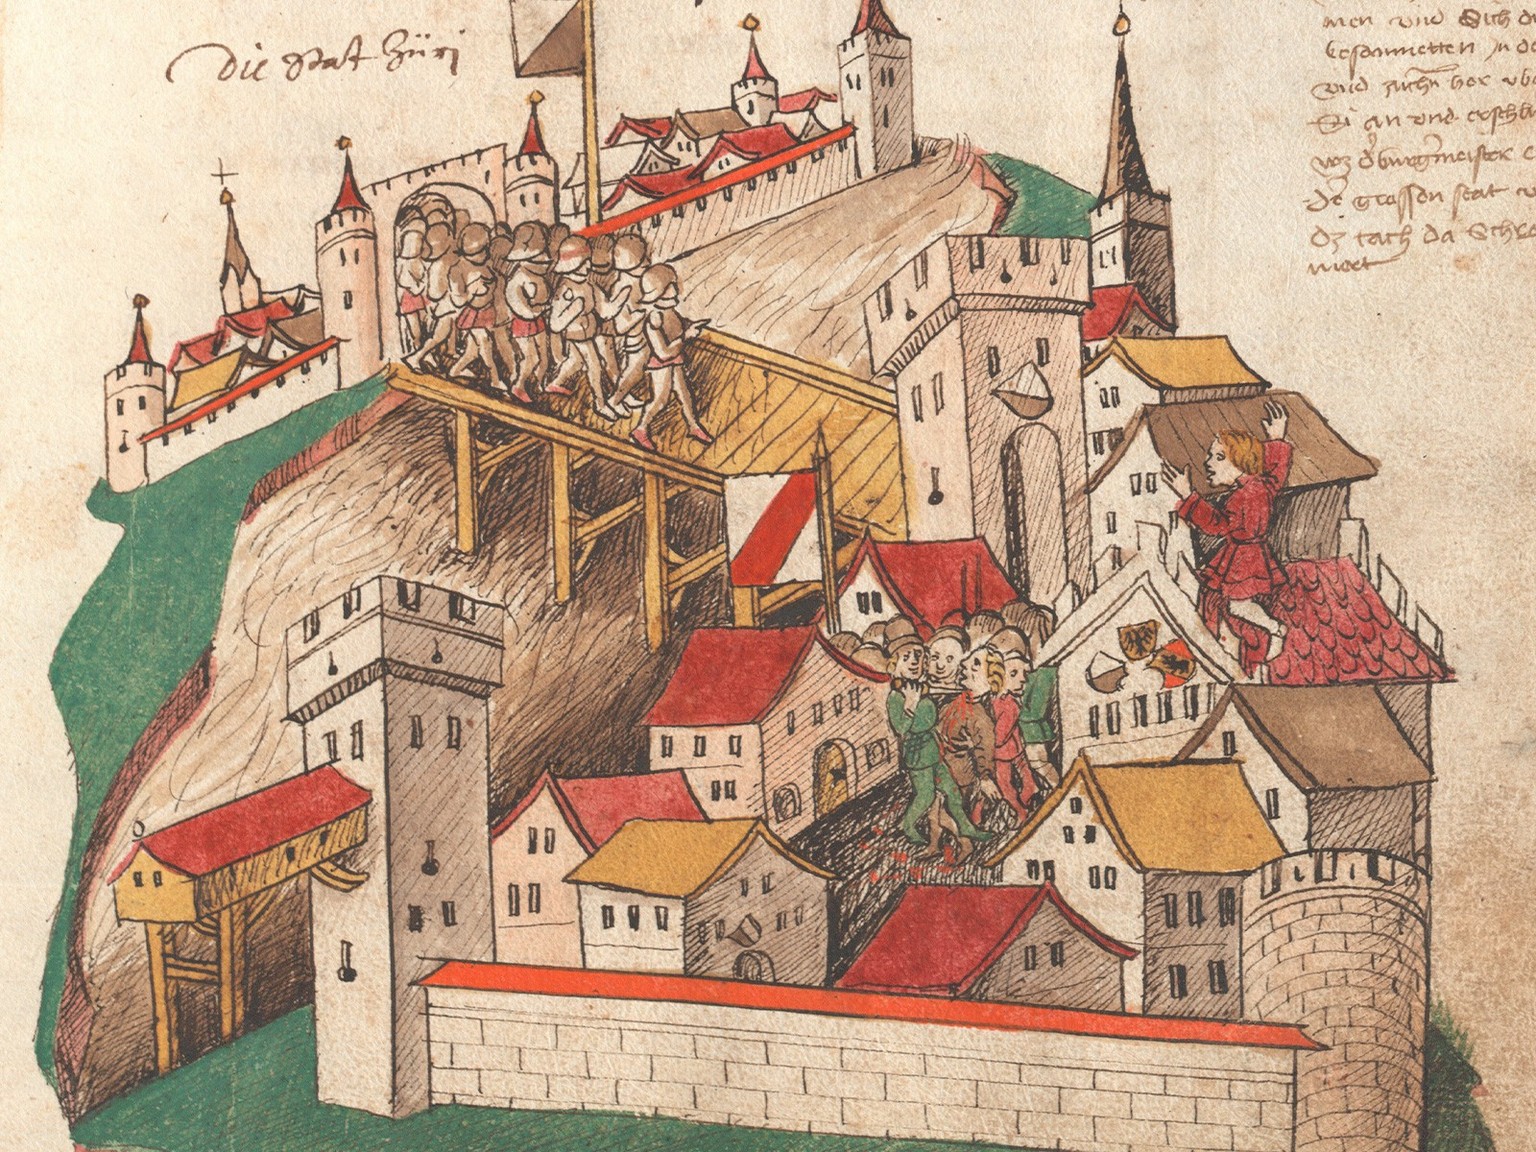 «Mordnacht zu Zürich», 24. Februar 1350: Bürgermeister Rudolf Brun schlägt auf dem Dach des Rathauses Alarm.
https://www.e-manuscripta.ch/zuz/content/zoom/2402484